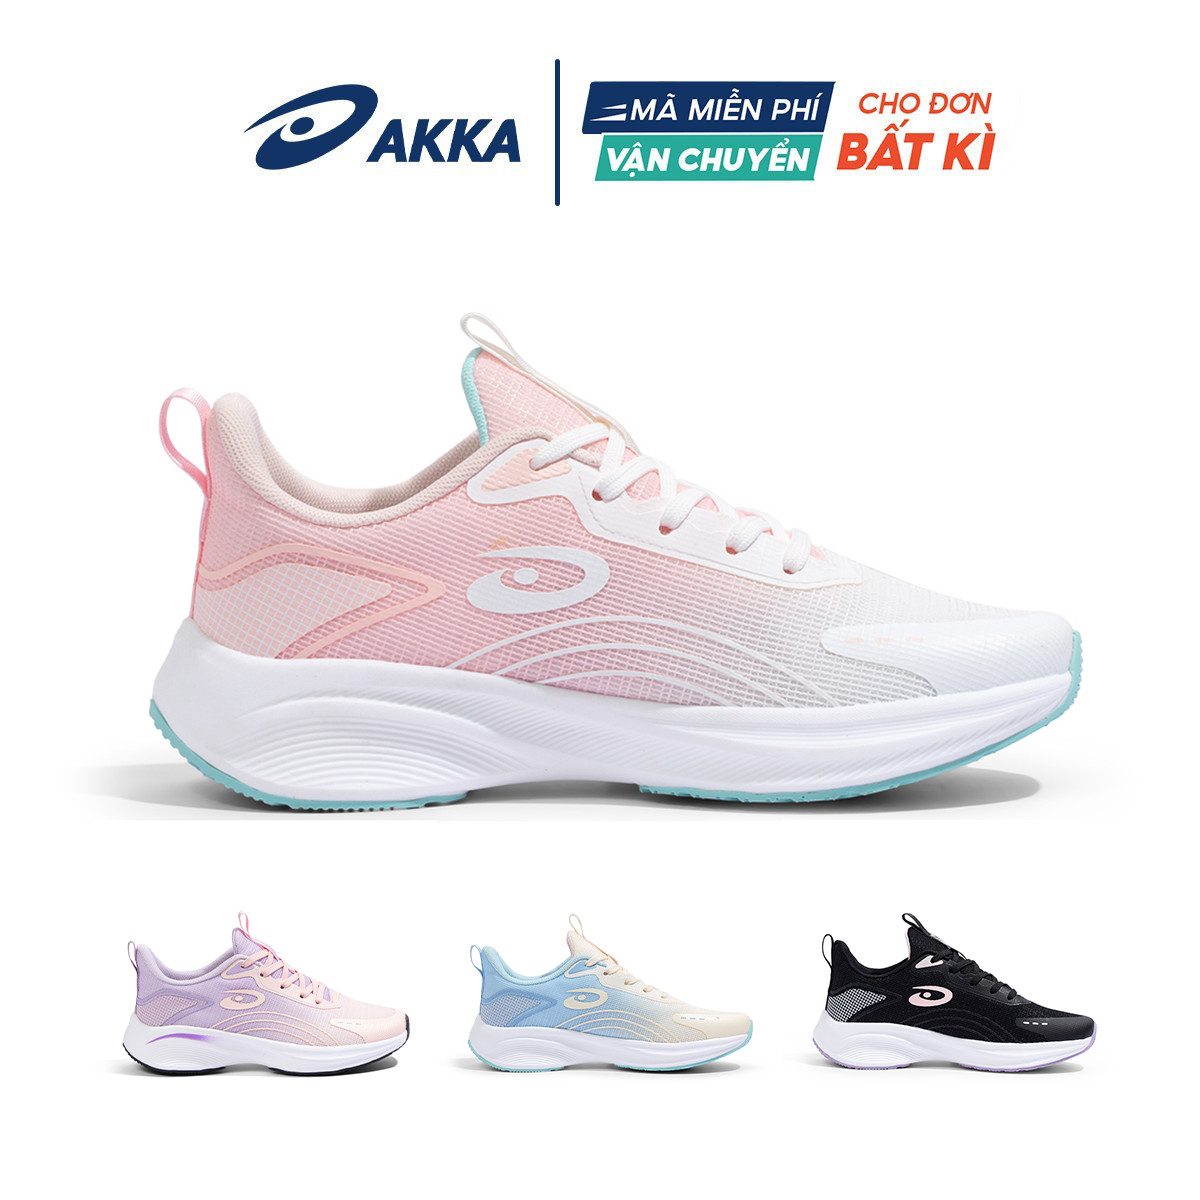 Giày thể thao chạy bộ nữ chính hãng AKKA ACTIVE B2257